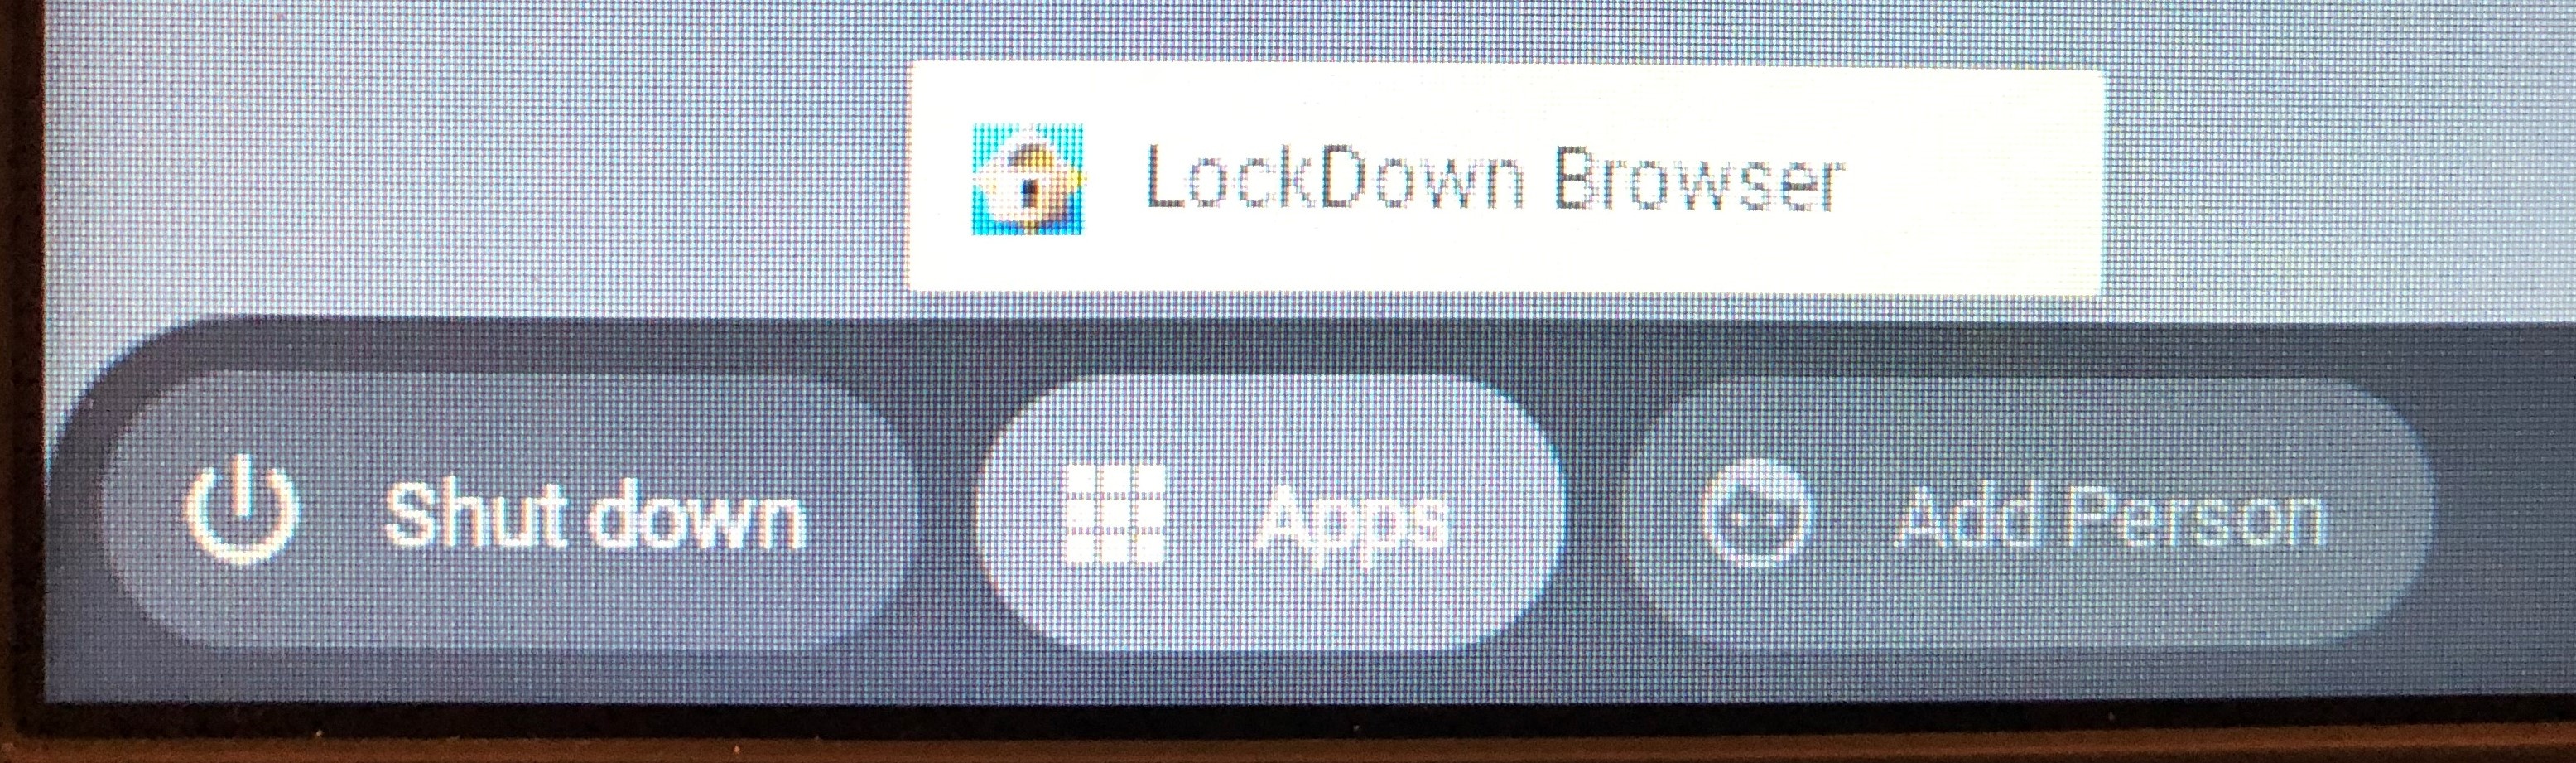 respondus lockdown browser update server